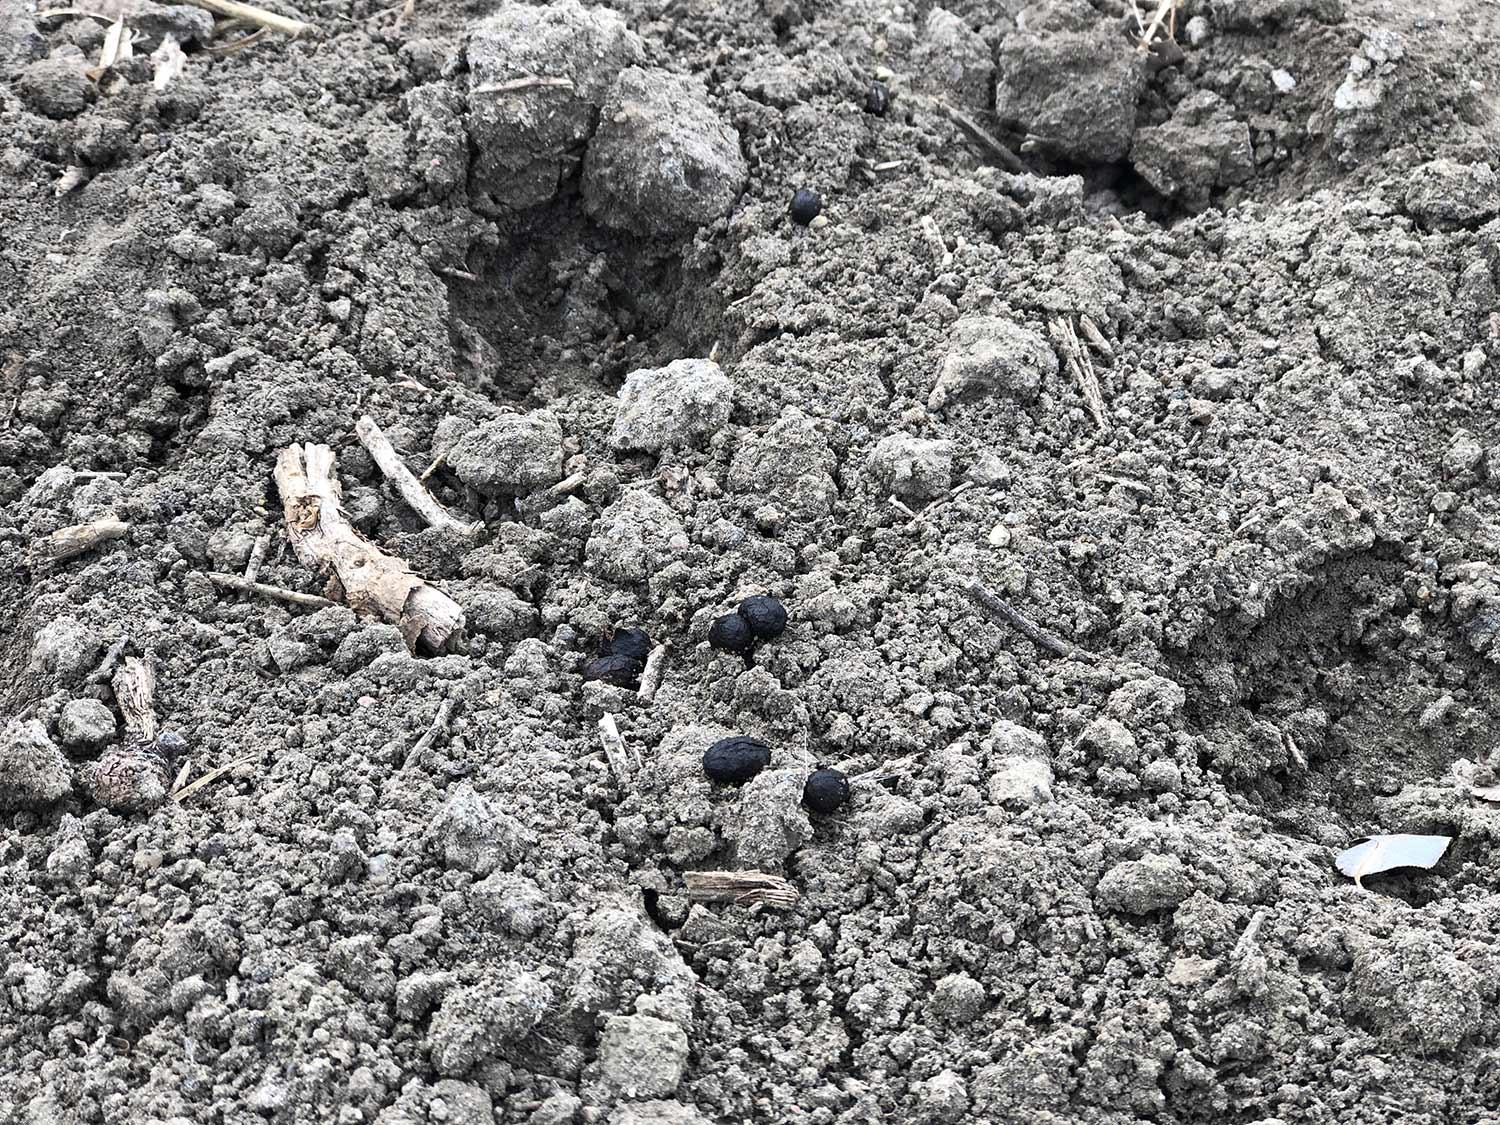 deer pellets laying on rocky soil